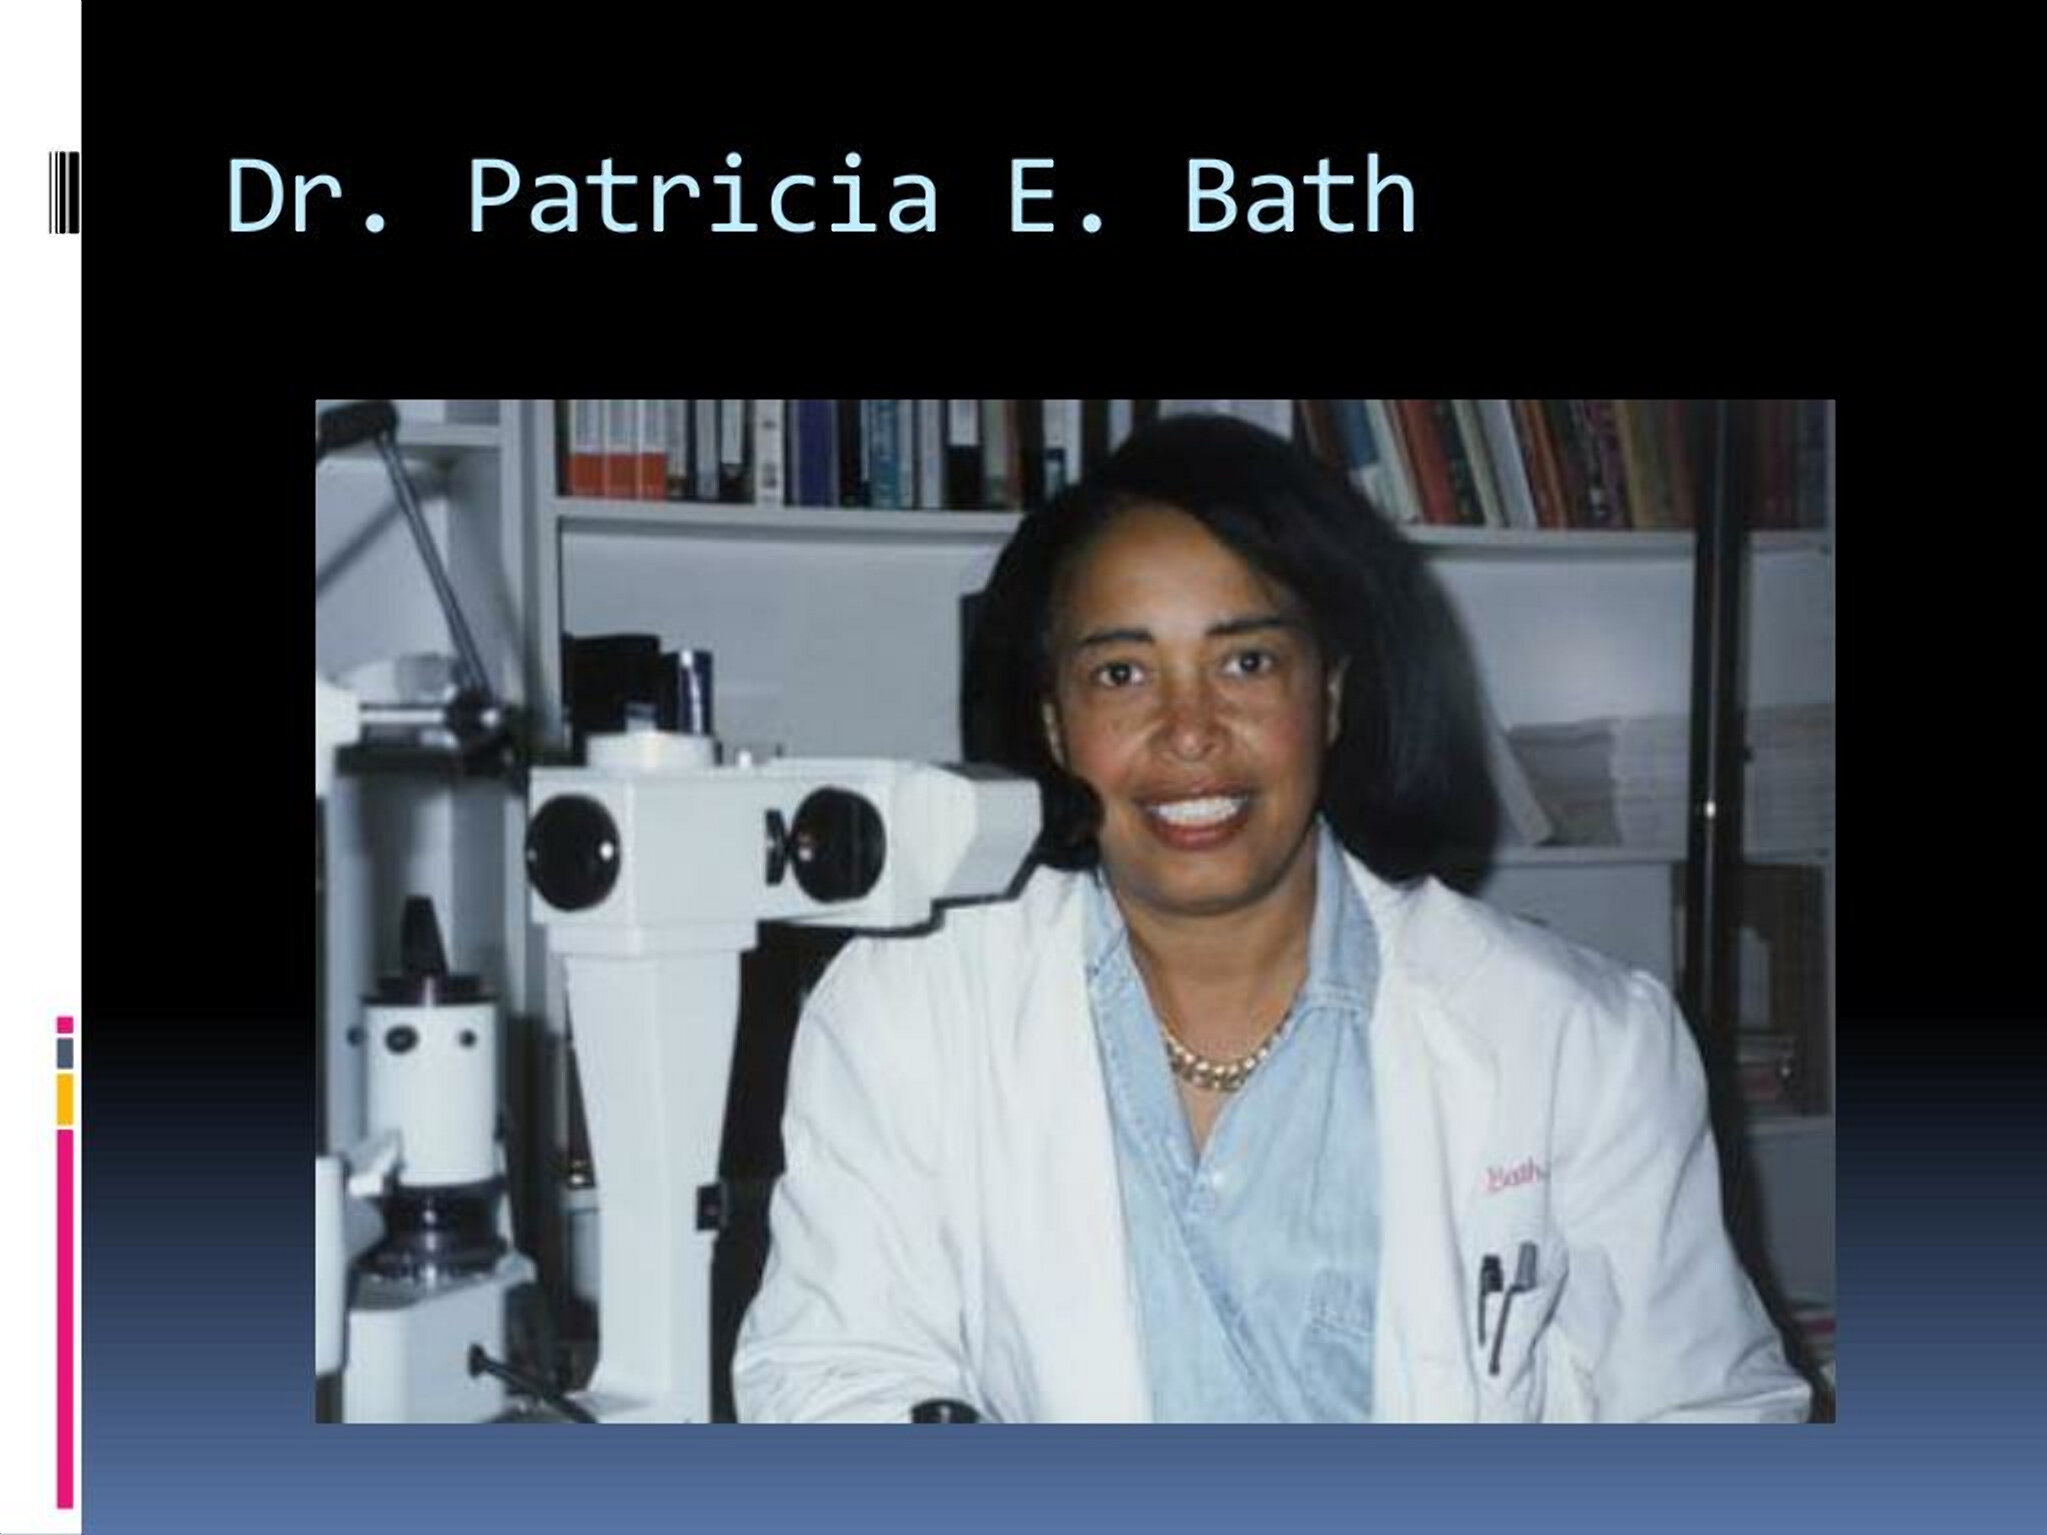 Với máy thăm dò Laserphaco của mình, Patricia Bath giúp khôi phục thị lực cho những người bị mù hơn 30 năm. Thiết bị này được sử dụng trên toàn thế giới, và cải thiện thị lực cho hàng triệu người. (Ảnh: slideserve)